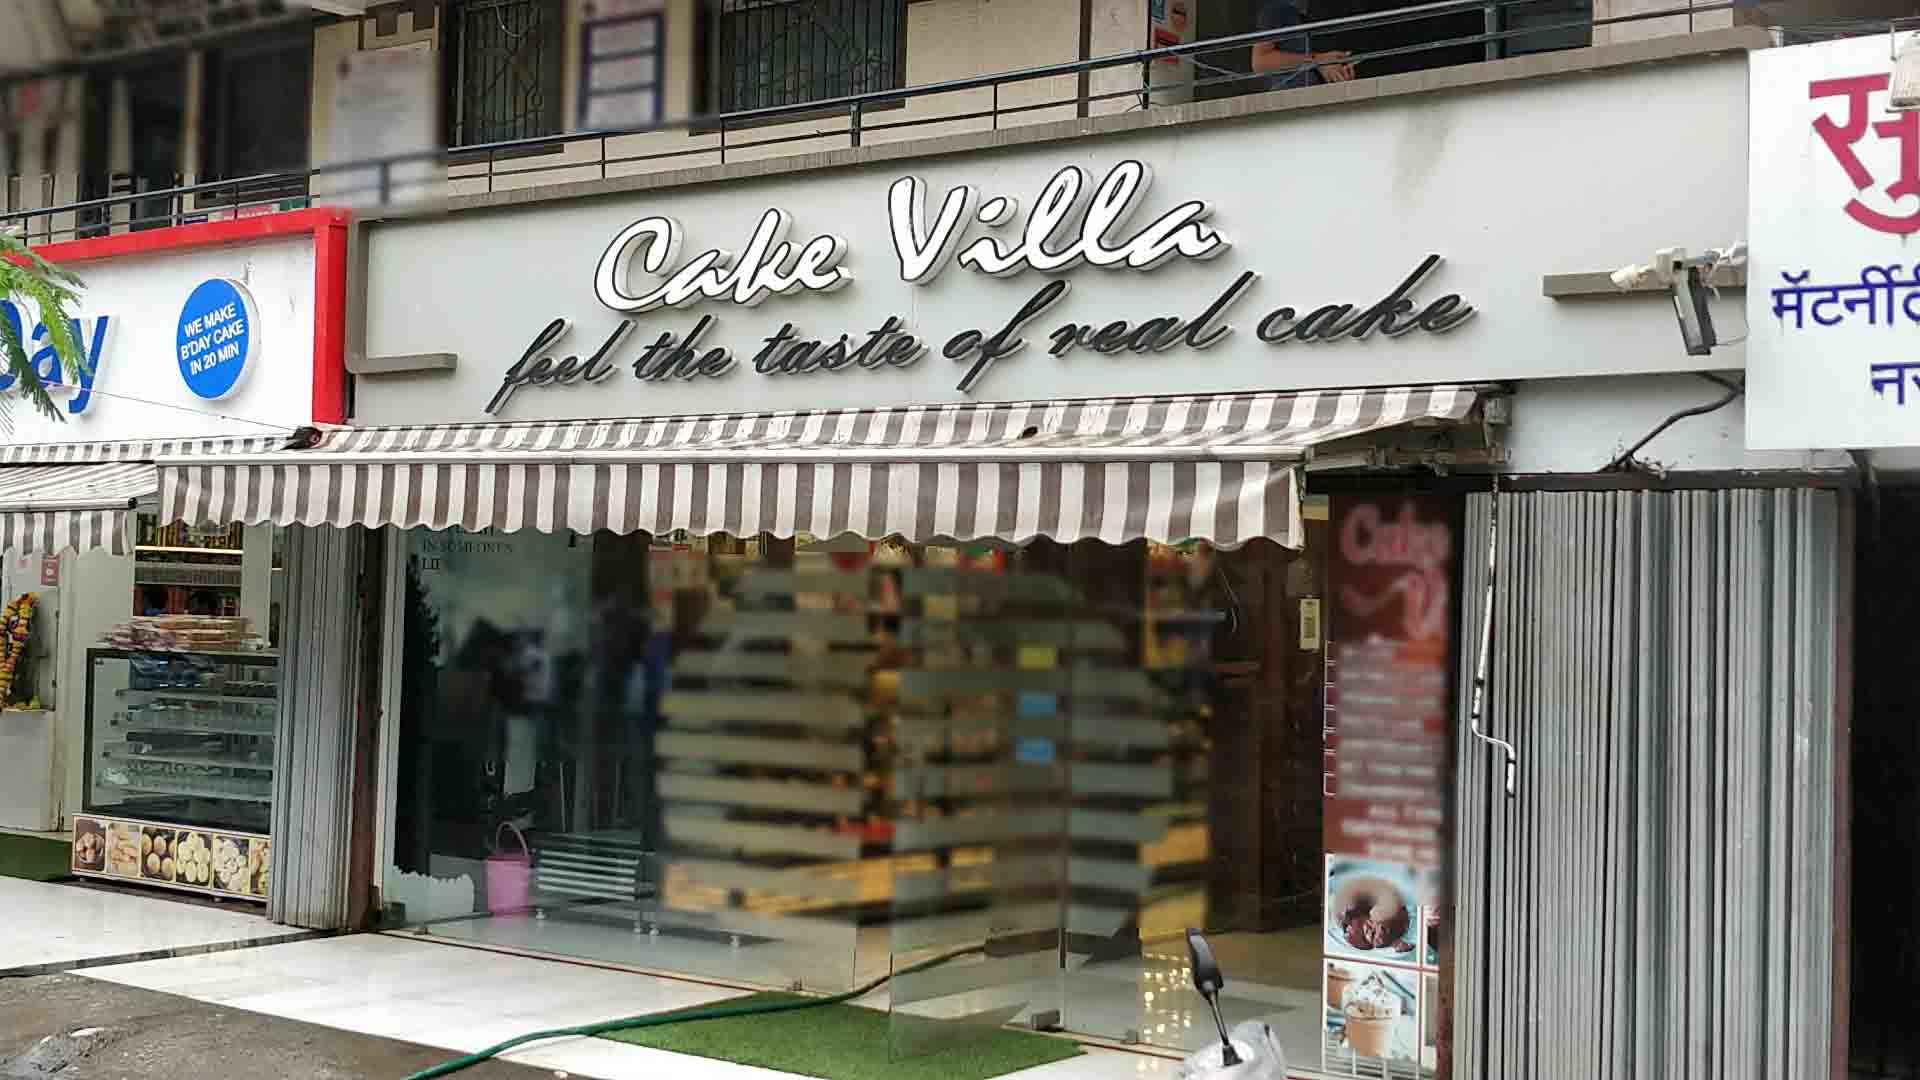 THE CAKE VILLA